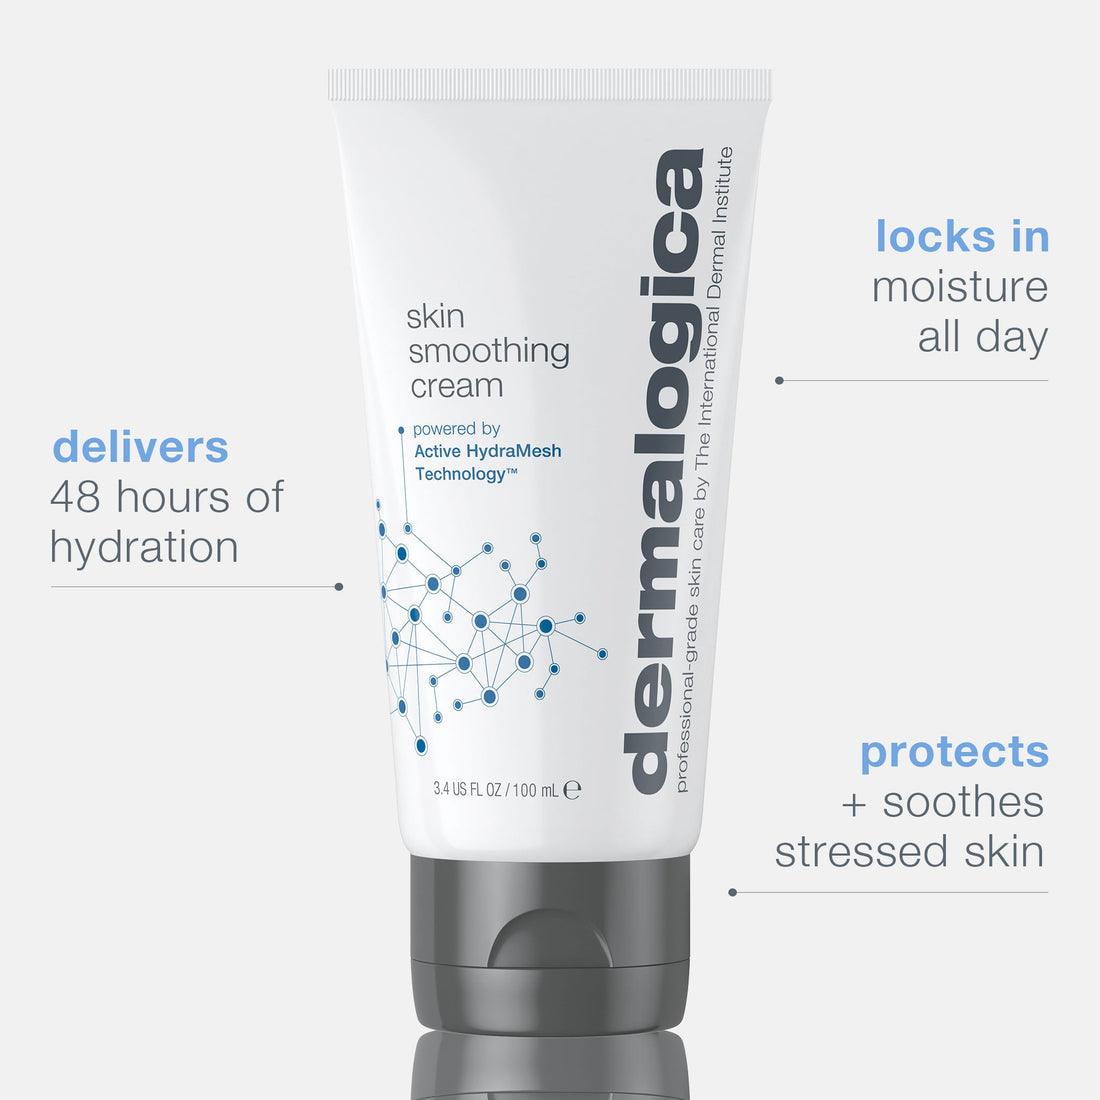 skin smoothing cream moisturizer - Dermalogica Hong Kong